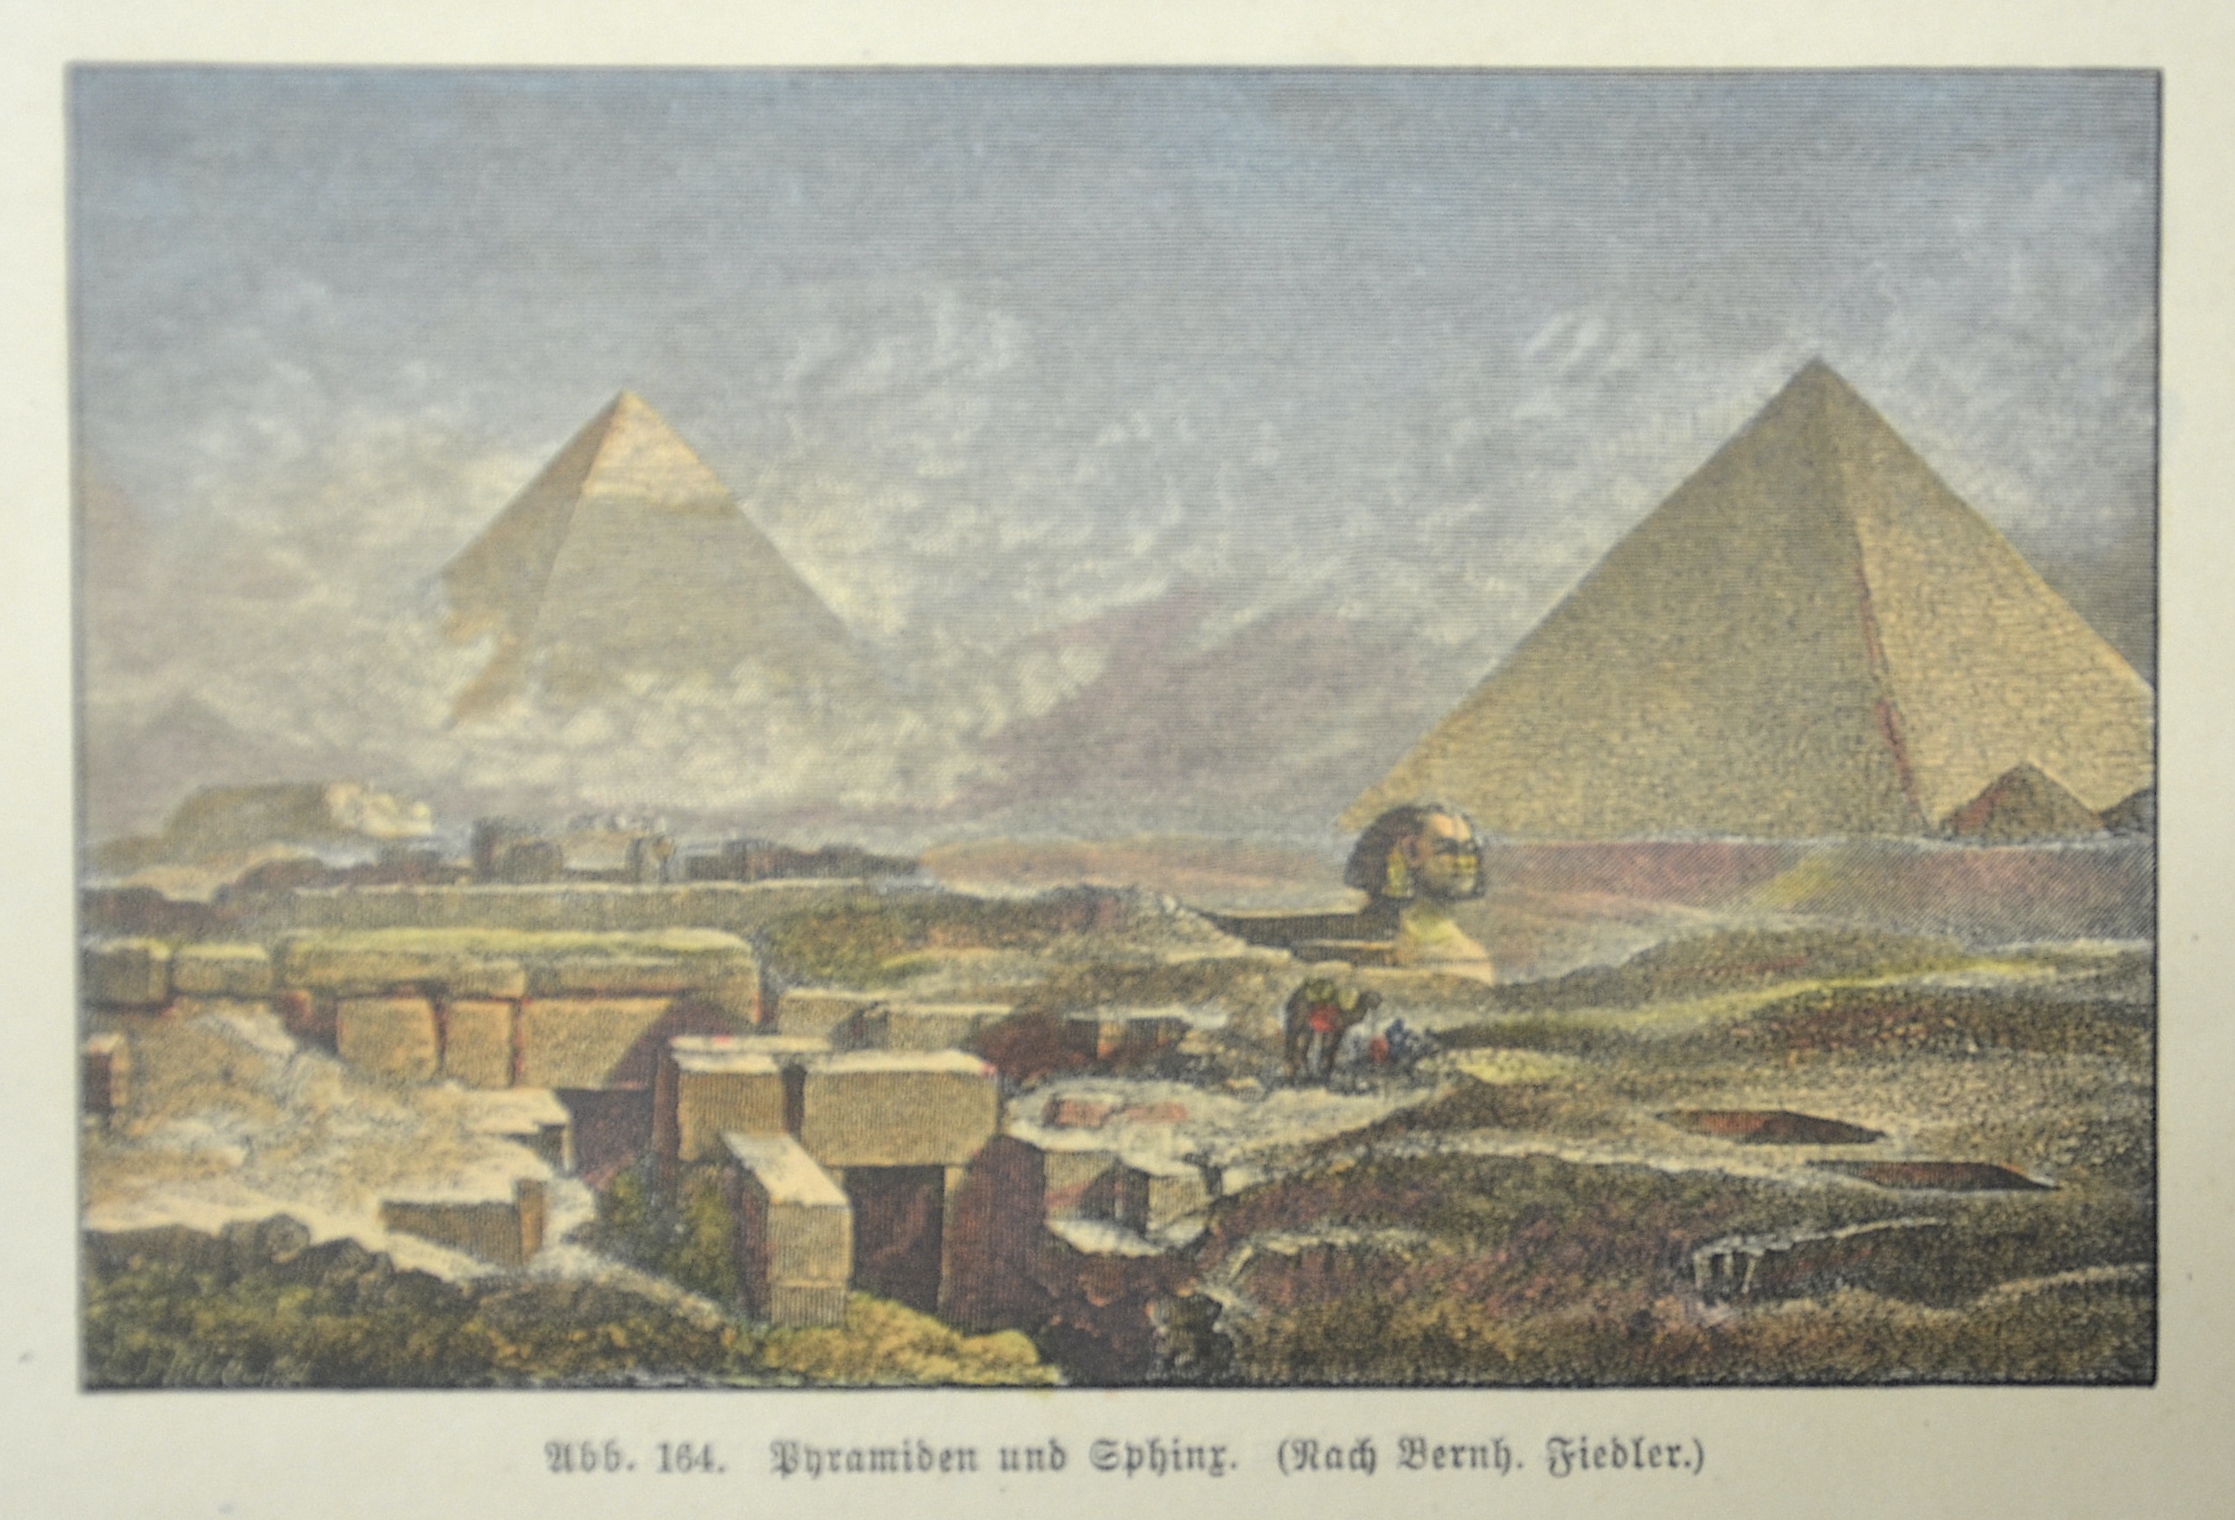 1343 Pyramiden und Sphinx